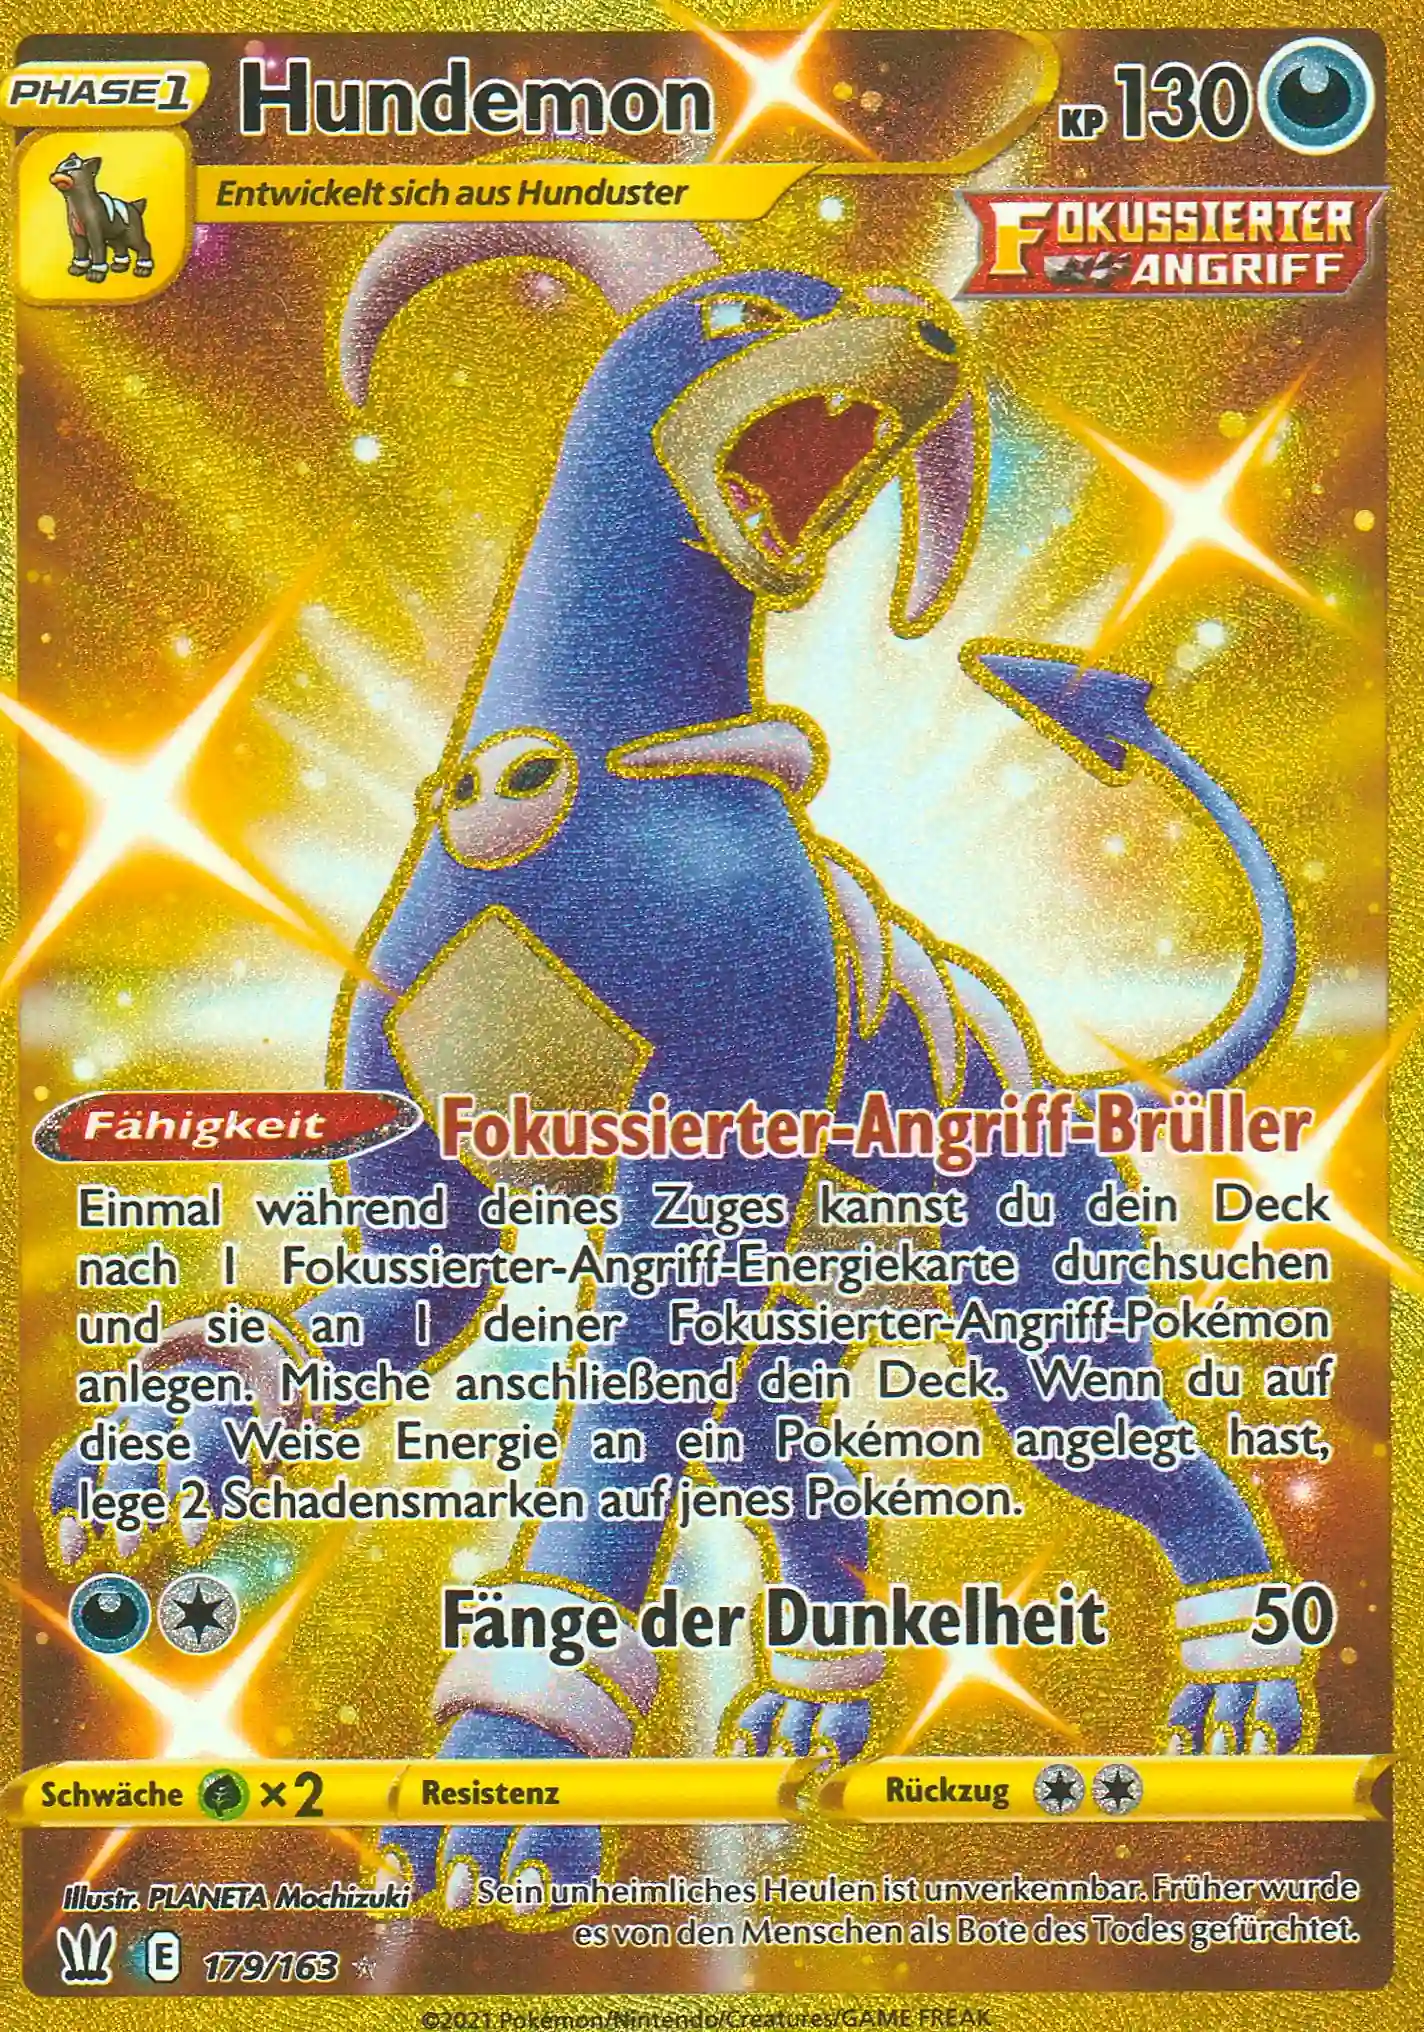 Hundemon (BST 179) – Shiny Gold Karte aus Kampfstile Deutsch